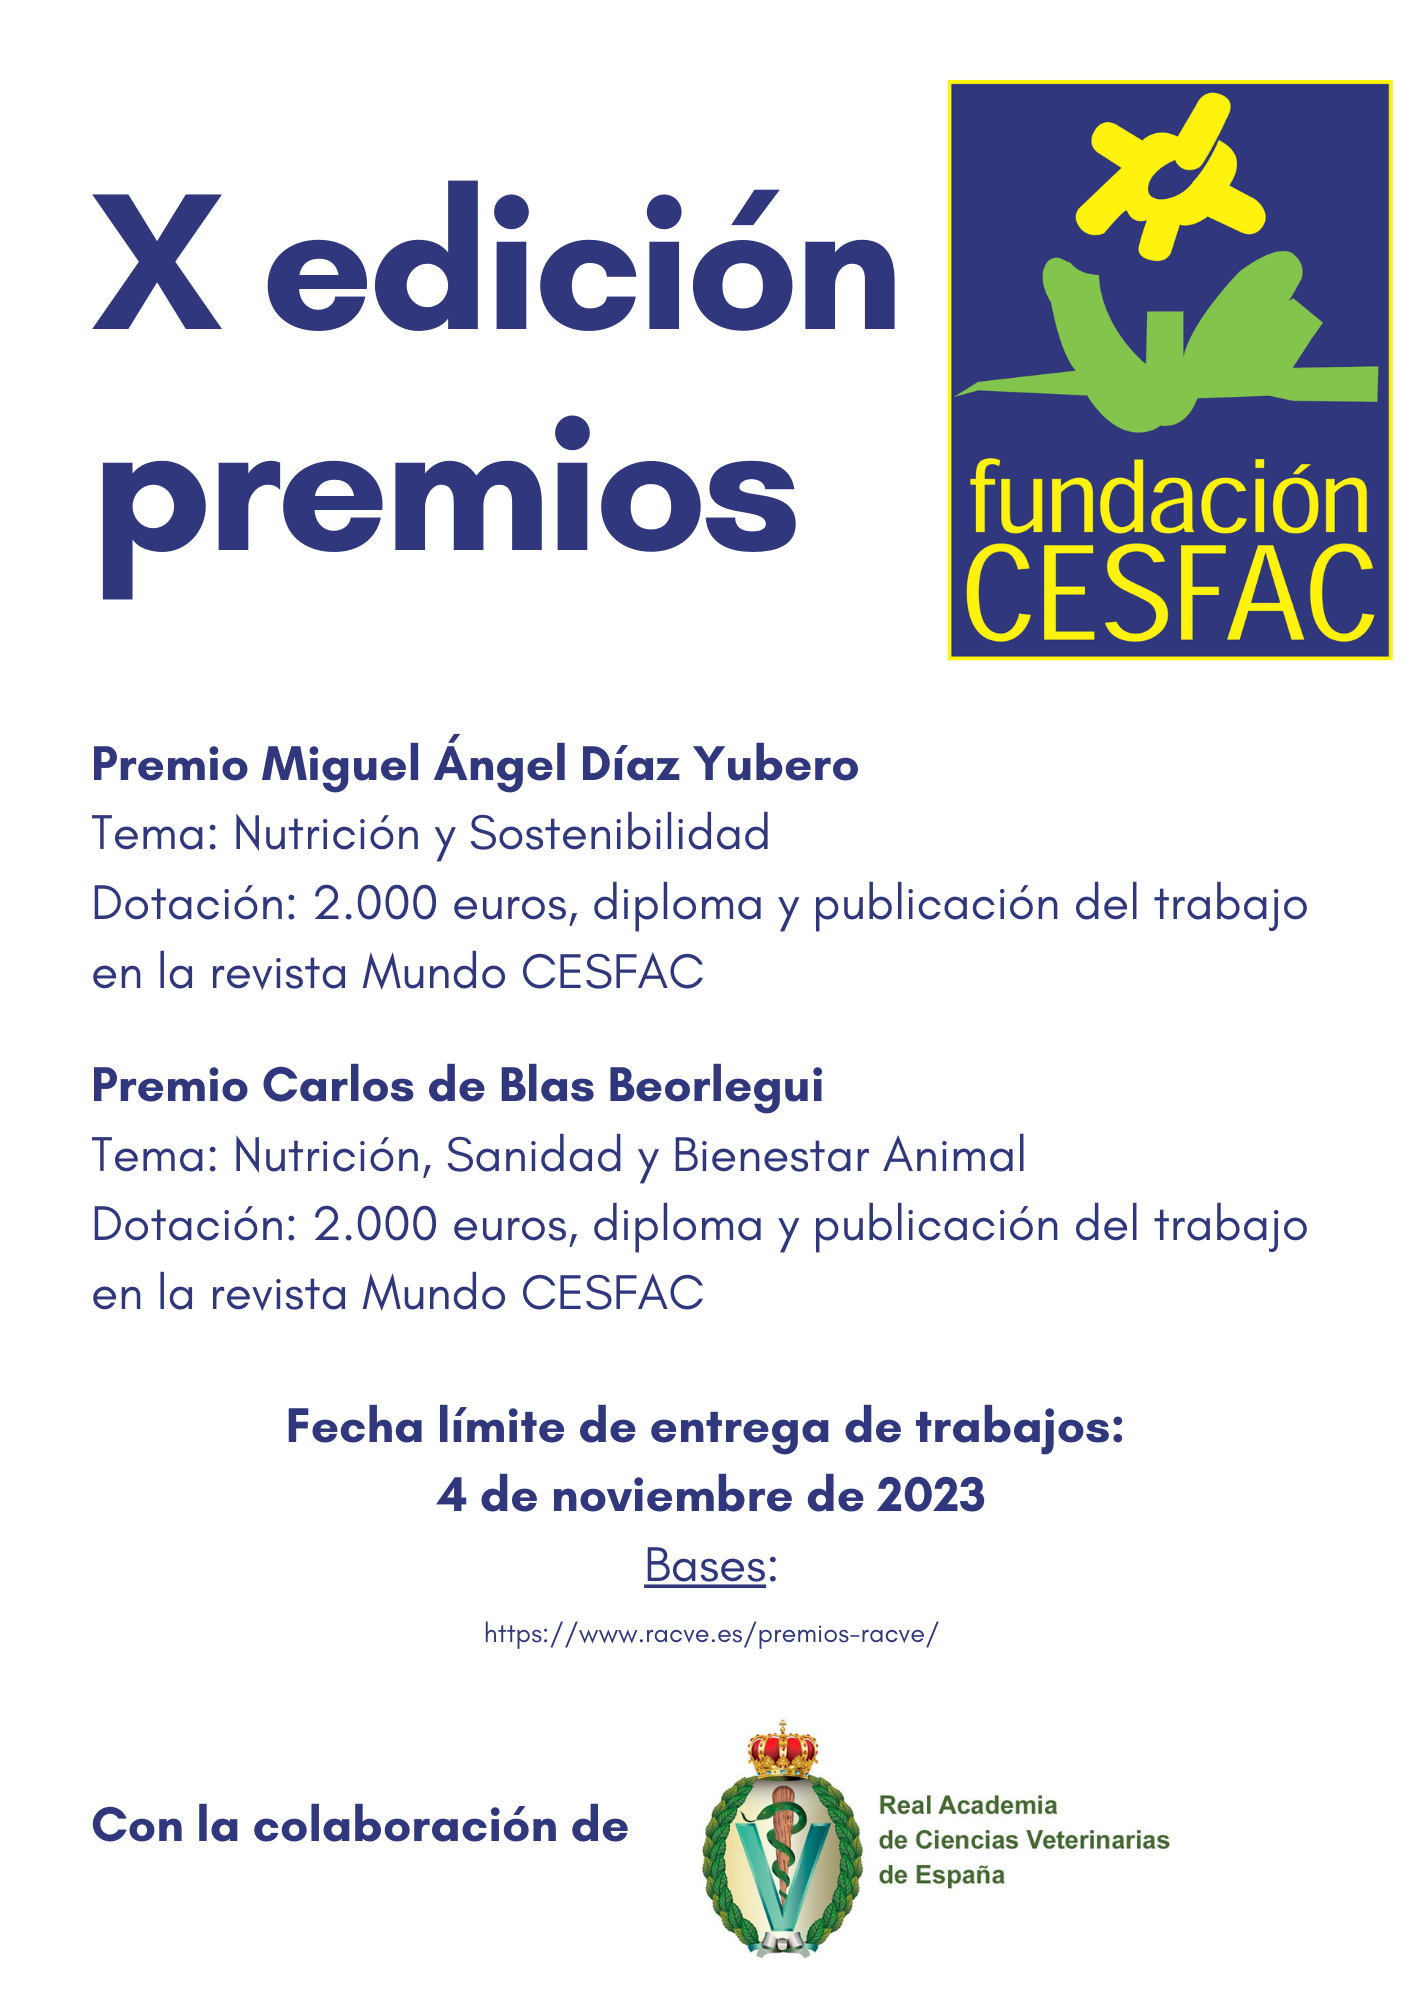 Cartel X edicion premios Fundacion CESFAC